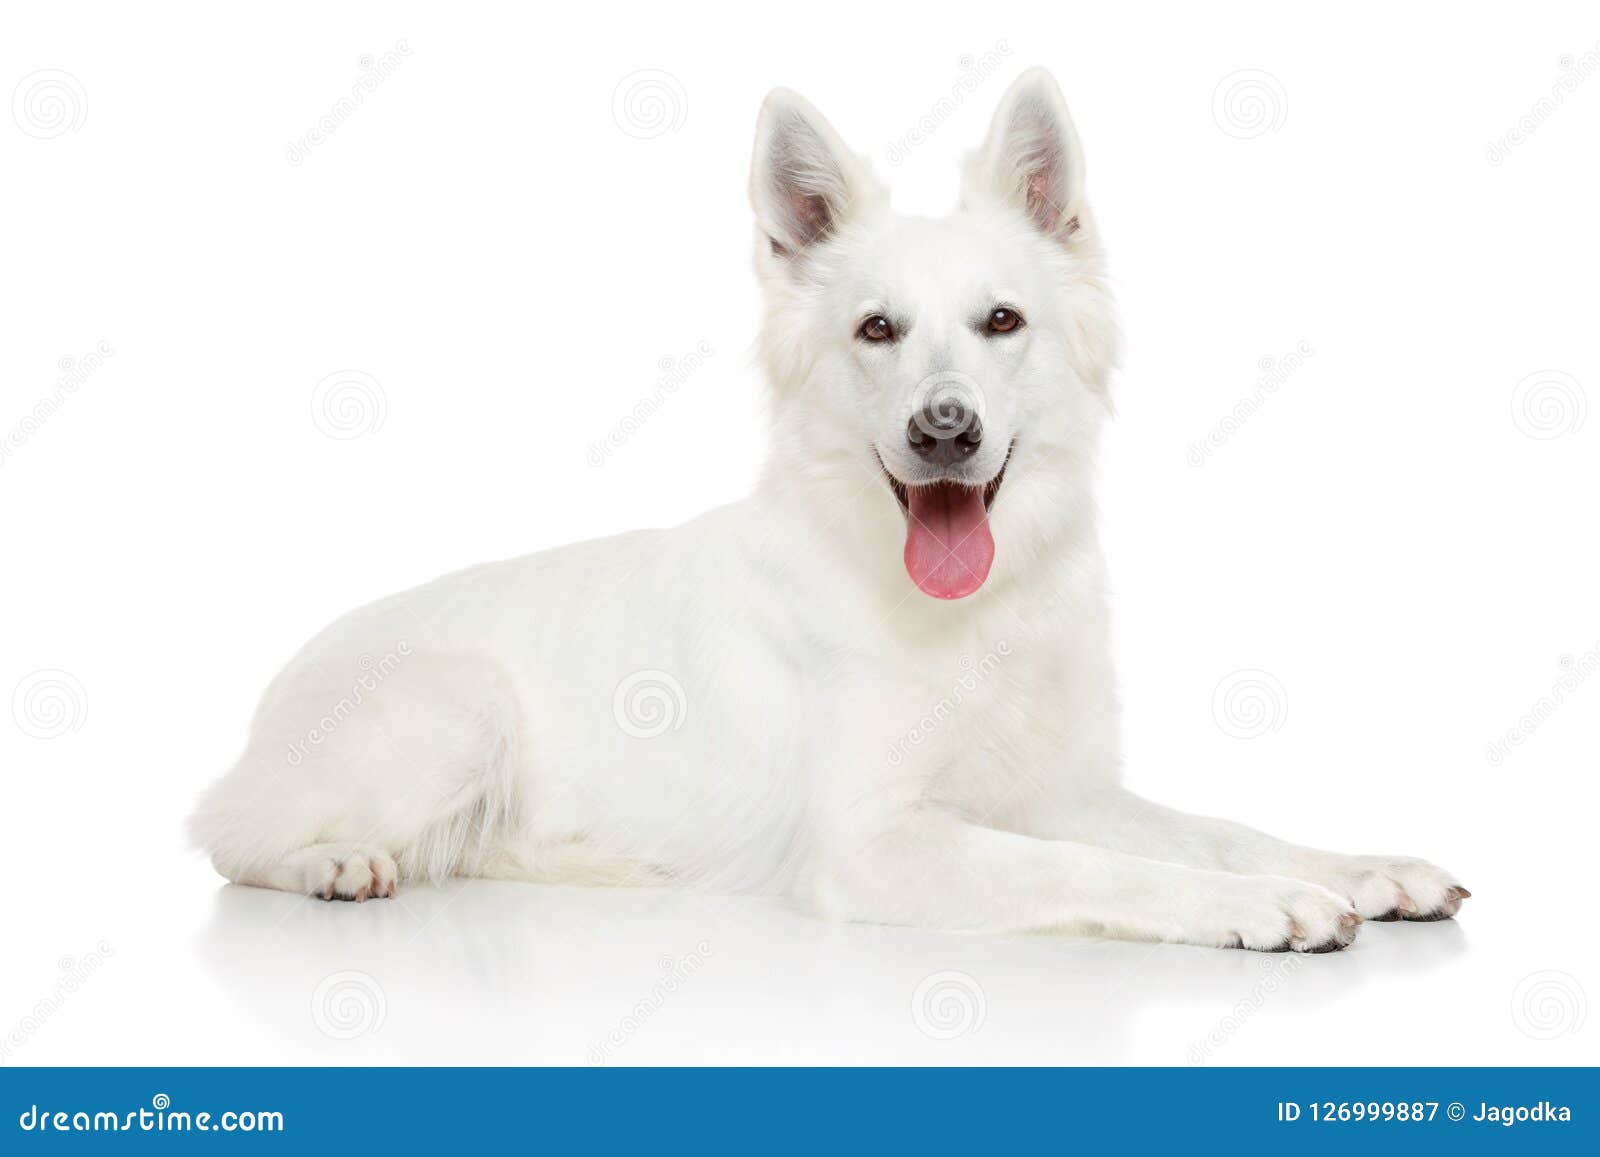 Happy Swiss Shepherd Dog On White Background Stock Image - Image of ...